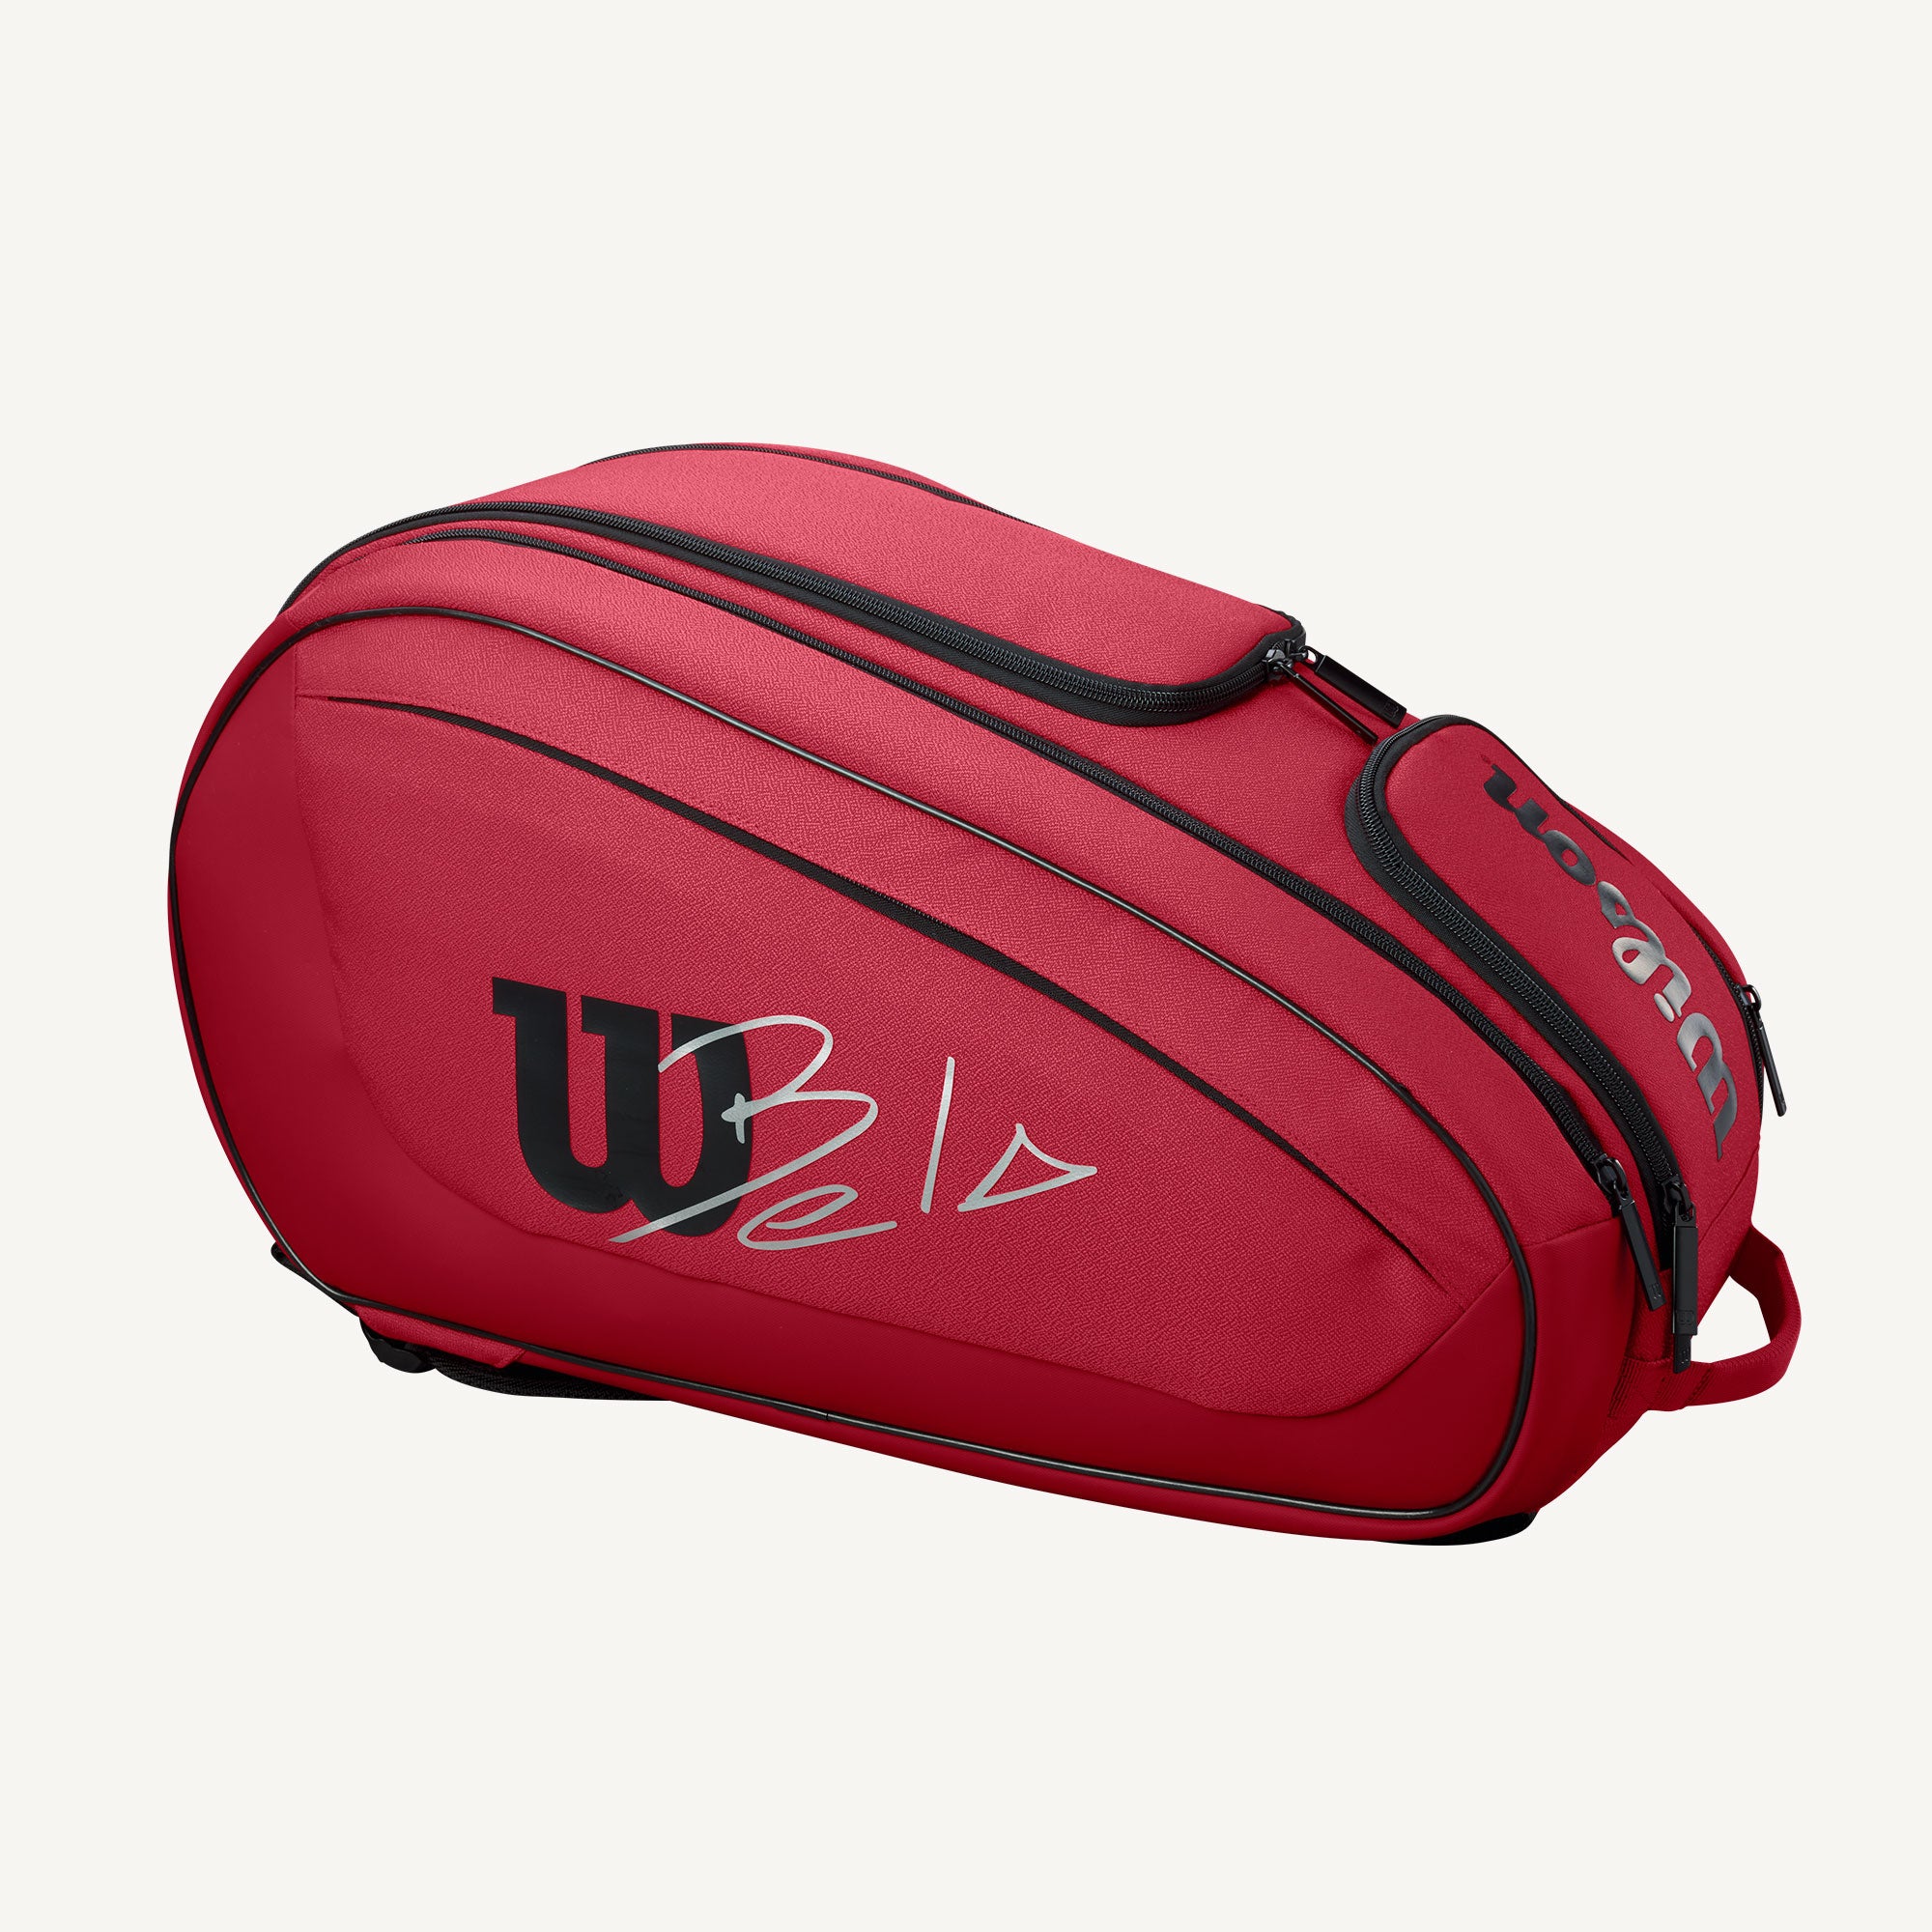 Wilson BELA DNA Super Tour Padel Bag - Red (1)